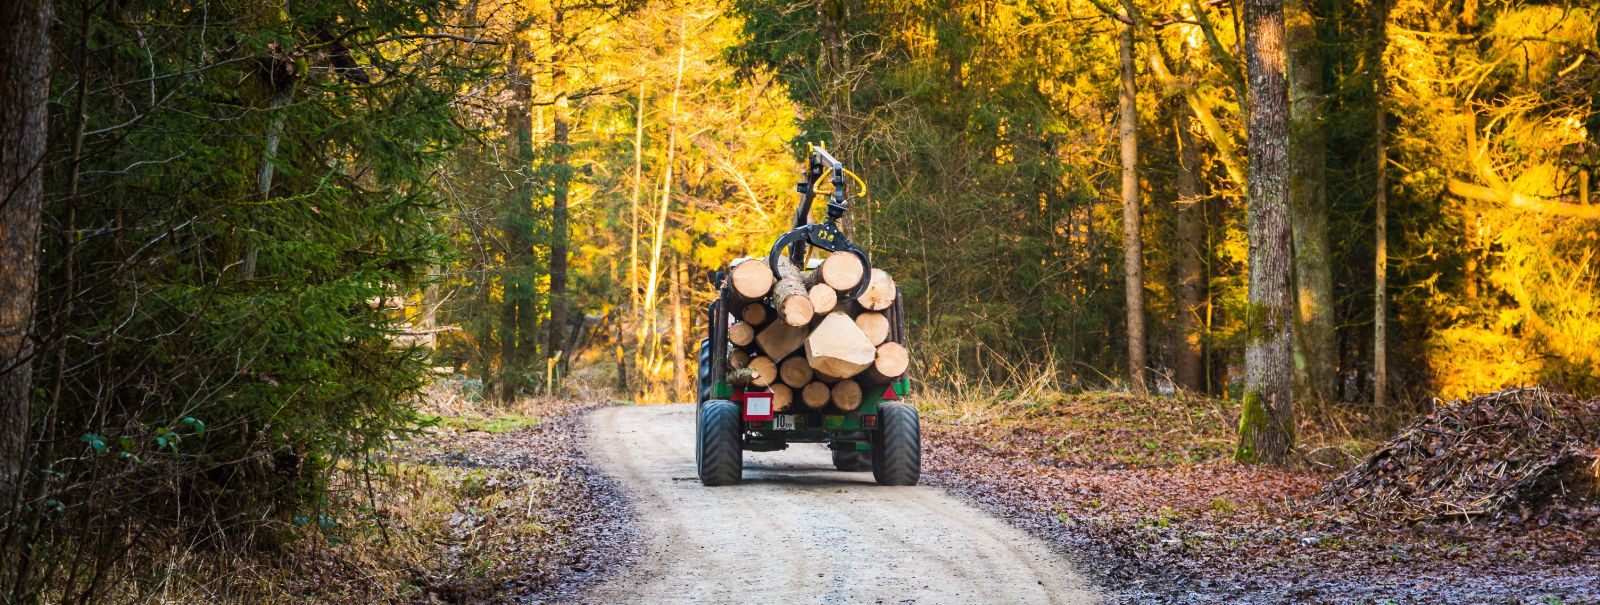 Tõhus metsahaldus on metsaökosüsteemide tervise ja tootlikkuse ...